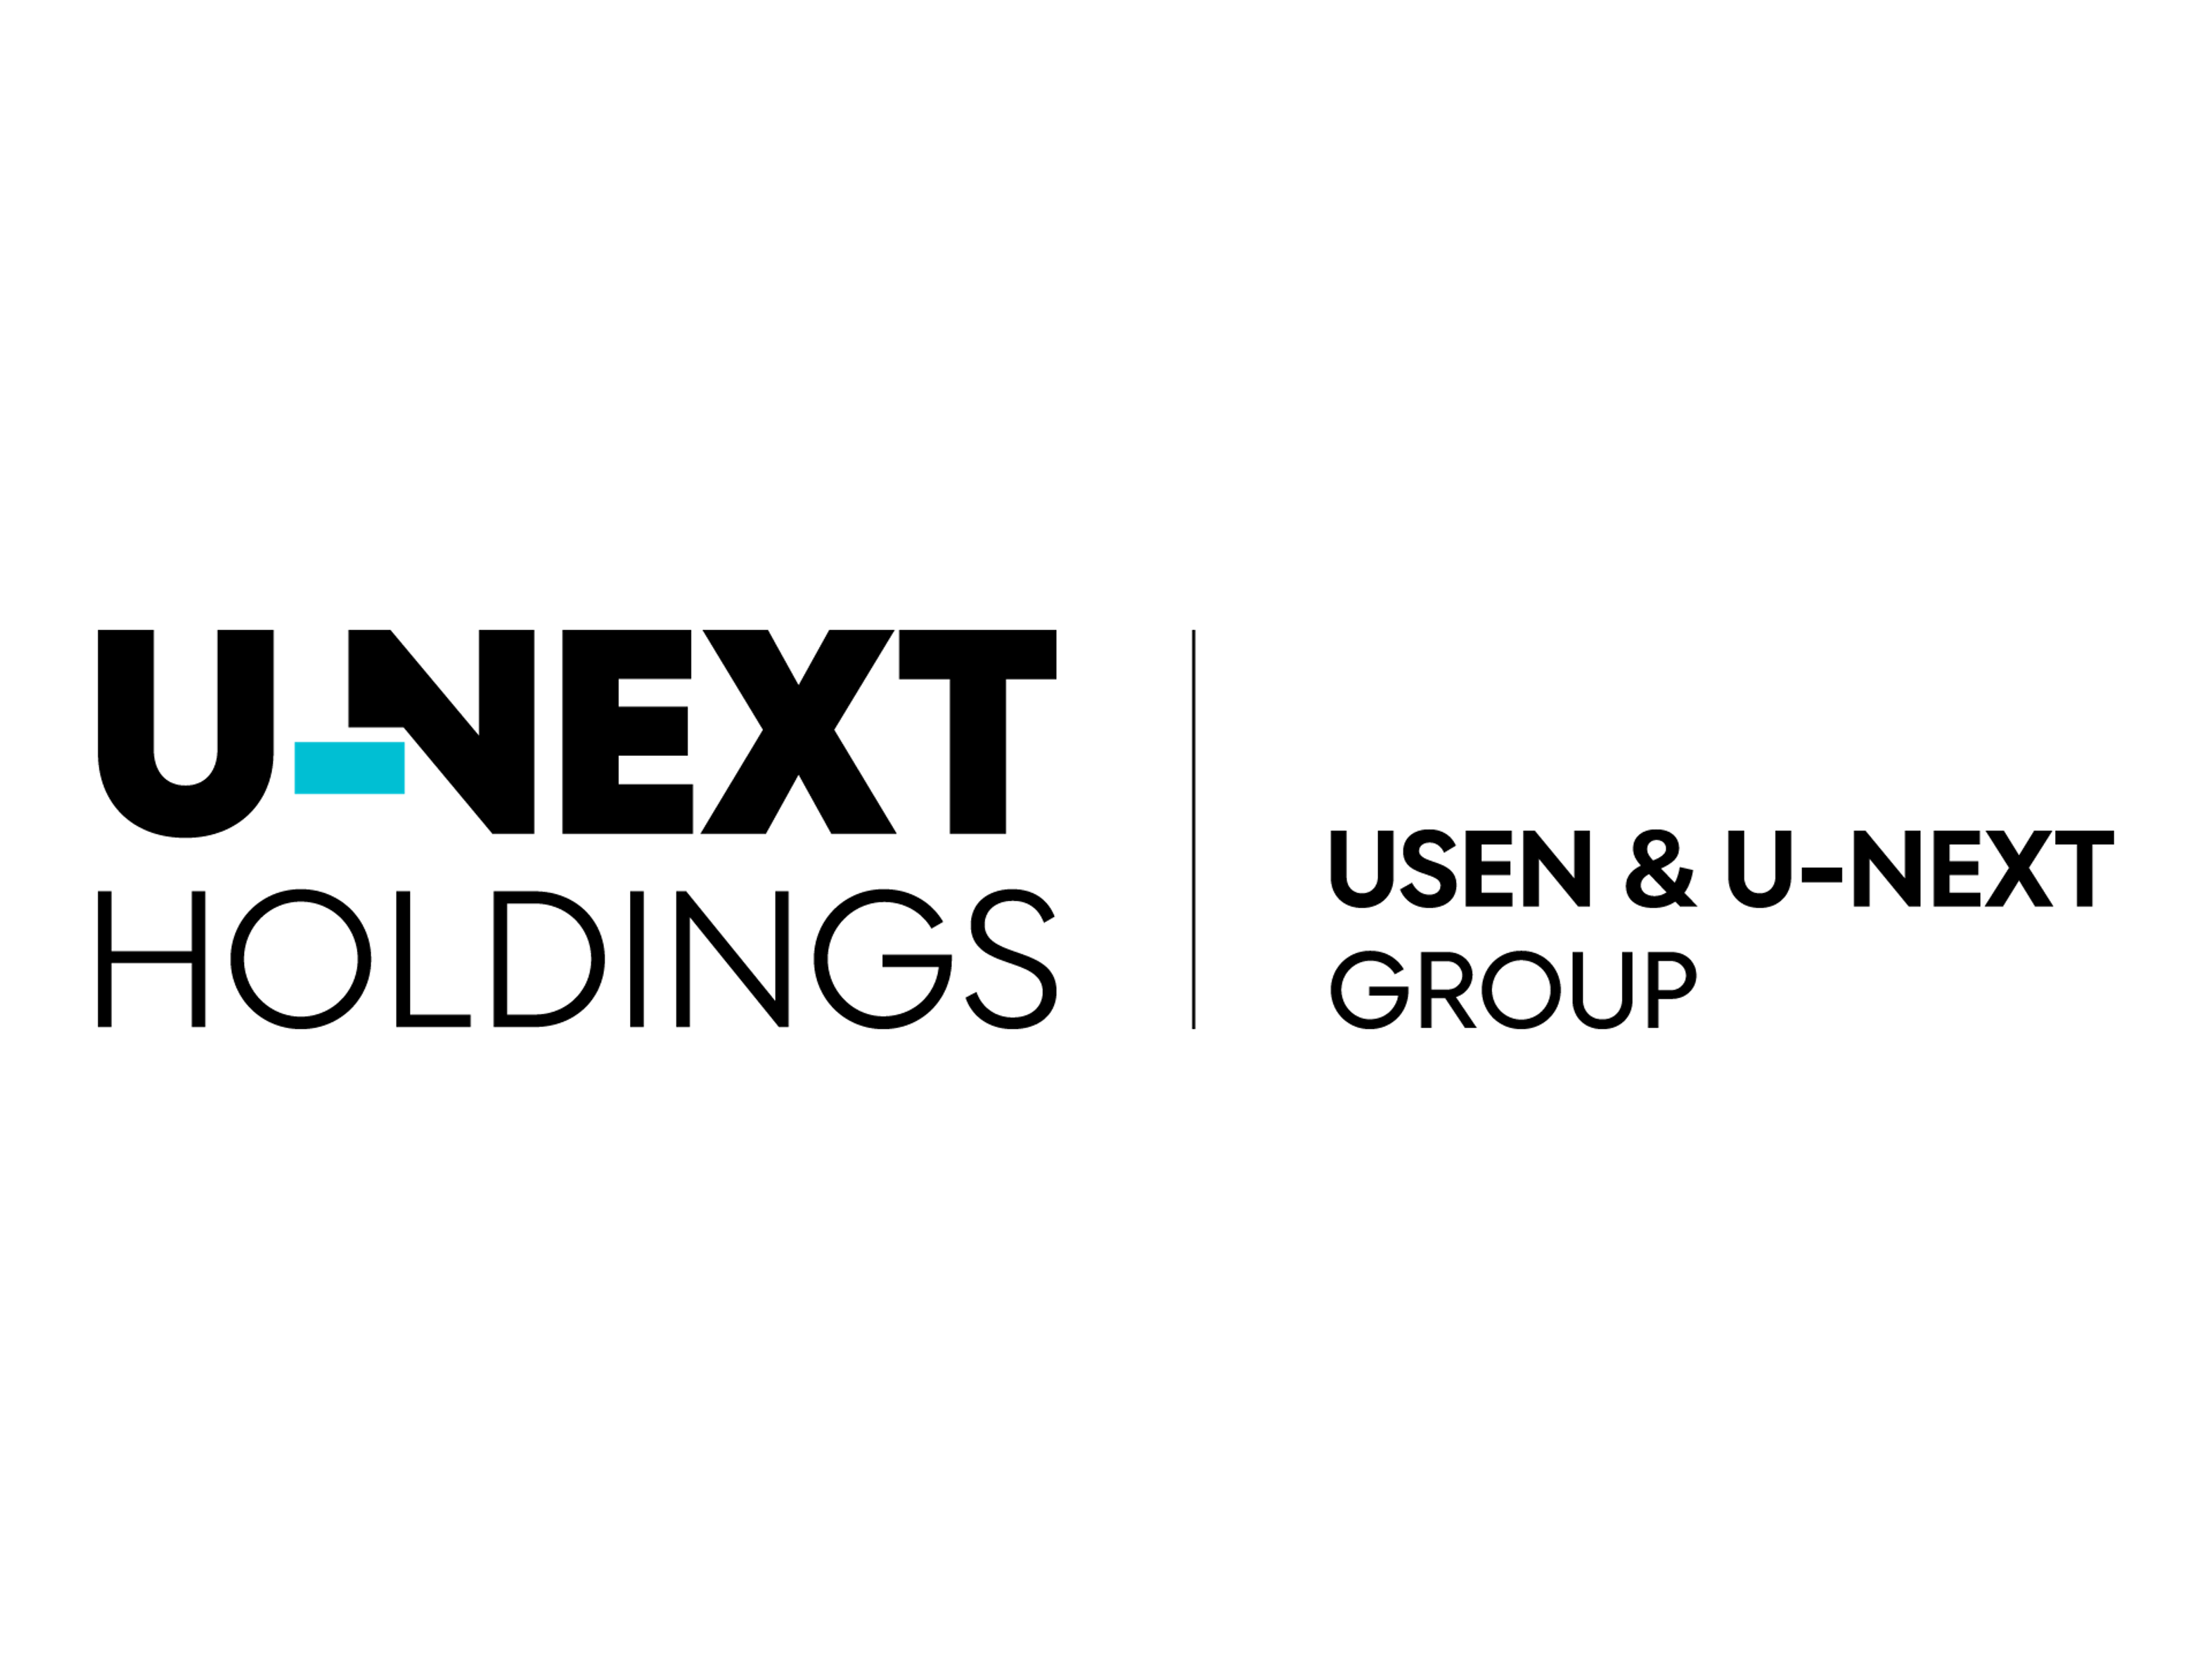 同社は、2017年12月に株式会社USENと株式会社U-NEXTの経営統合によって生まれた持株会社。